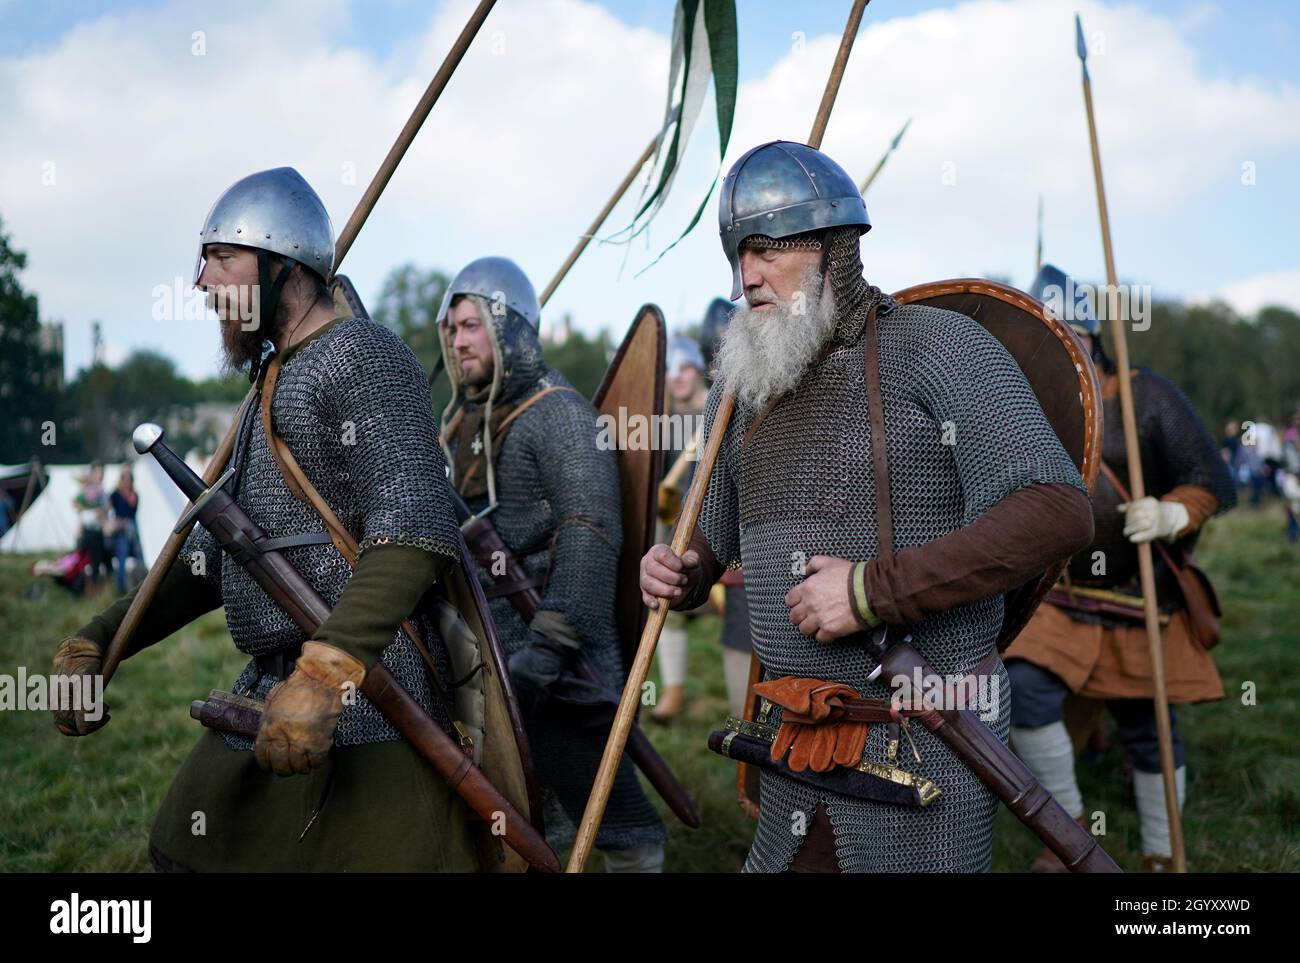 Die Re-enactors bereiten sich auf die Nachstellung der Schlacht von Hastings in der Battle Abbey in Sussex vor ihrem Jahrestag am 14. Oktober vor. Bilddatum: Samstag, 9. Oktober 2021. Stockfoto